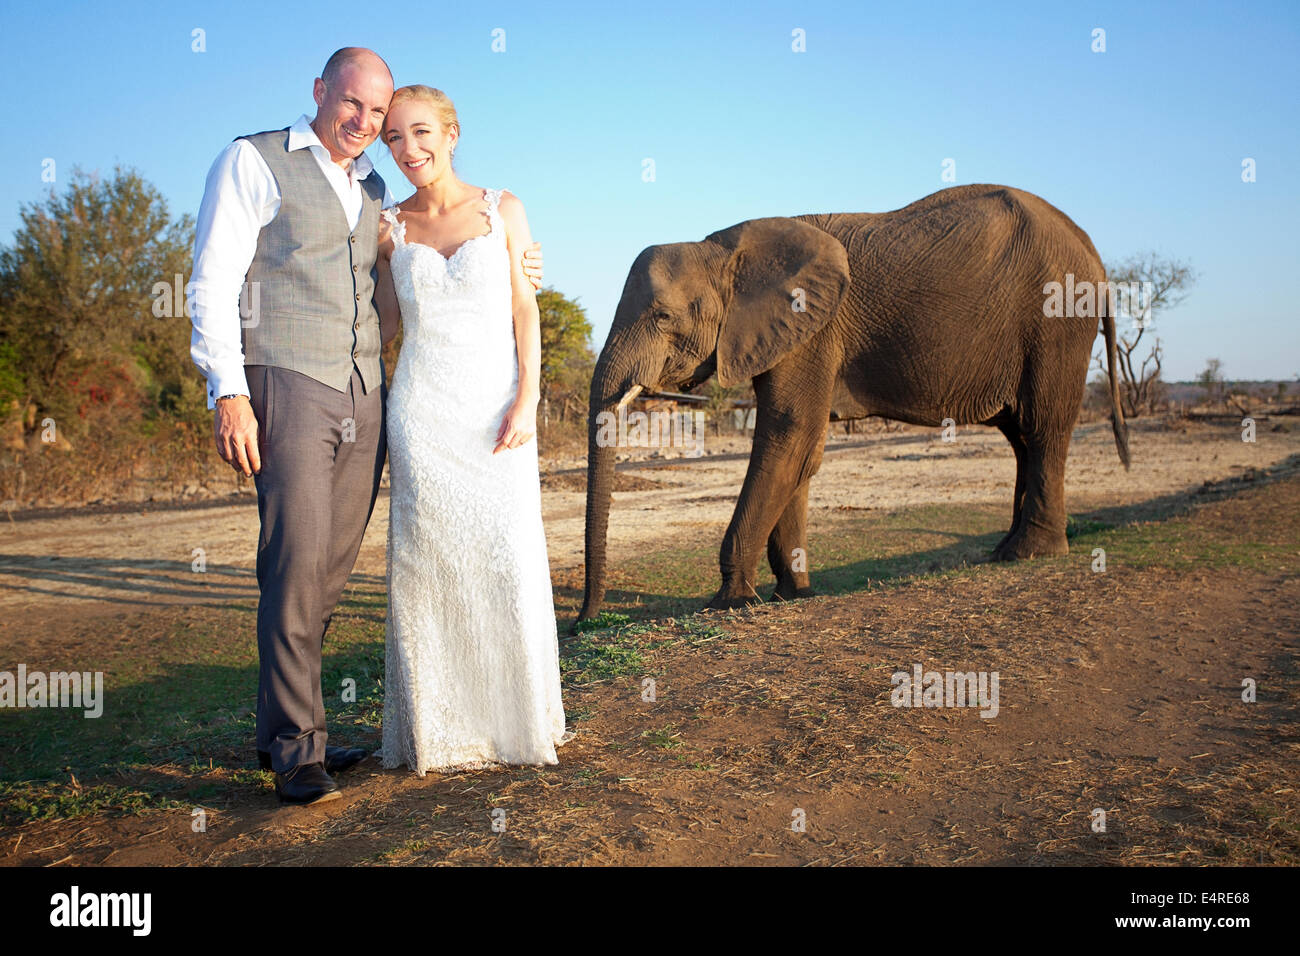 Verheiratet mit erwachsenen Elefanten für ihr Hochzeitsfoto paar stehen Stockfoto